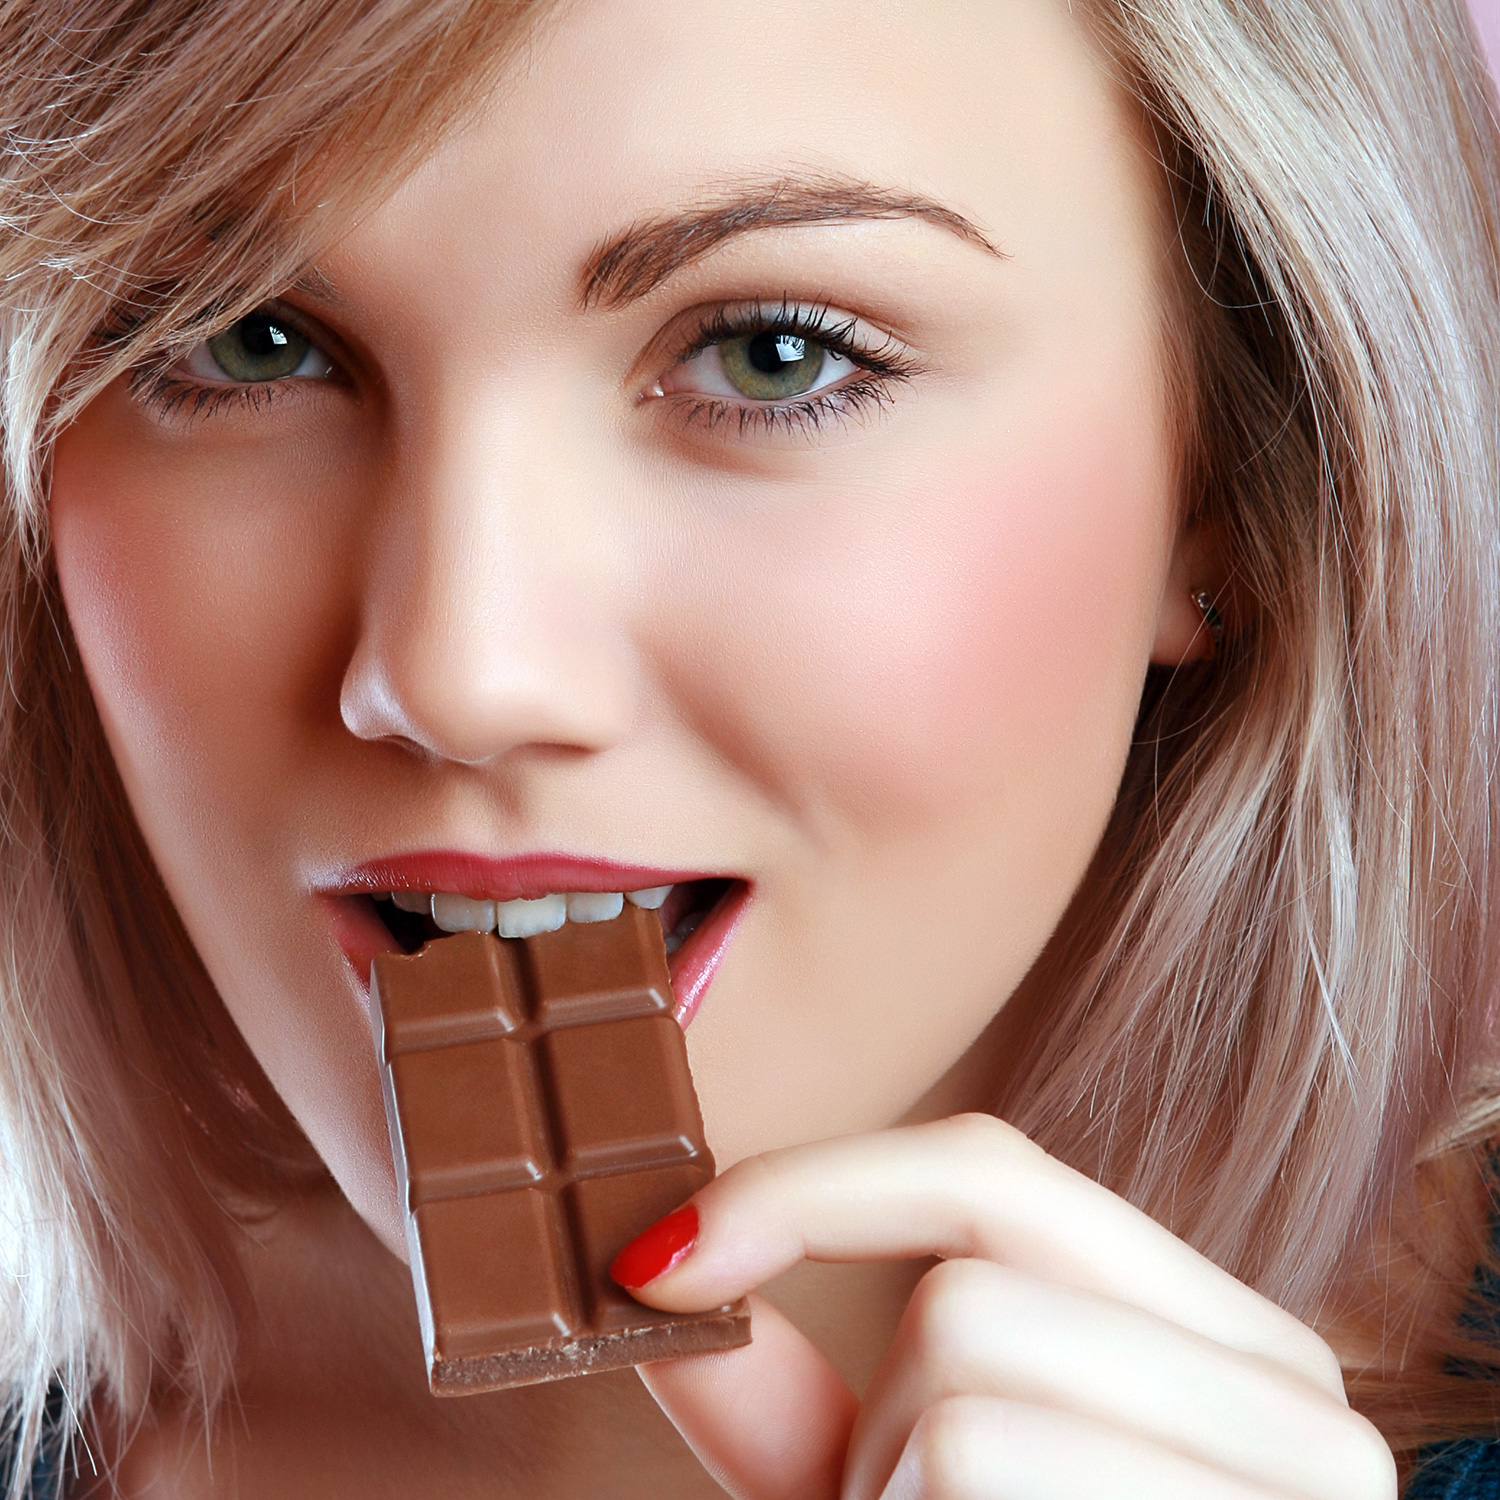 Emagreça Comendo Chocolate! Jornalista Publica Estudo BALELA e Engana a Mídia.